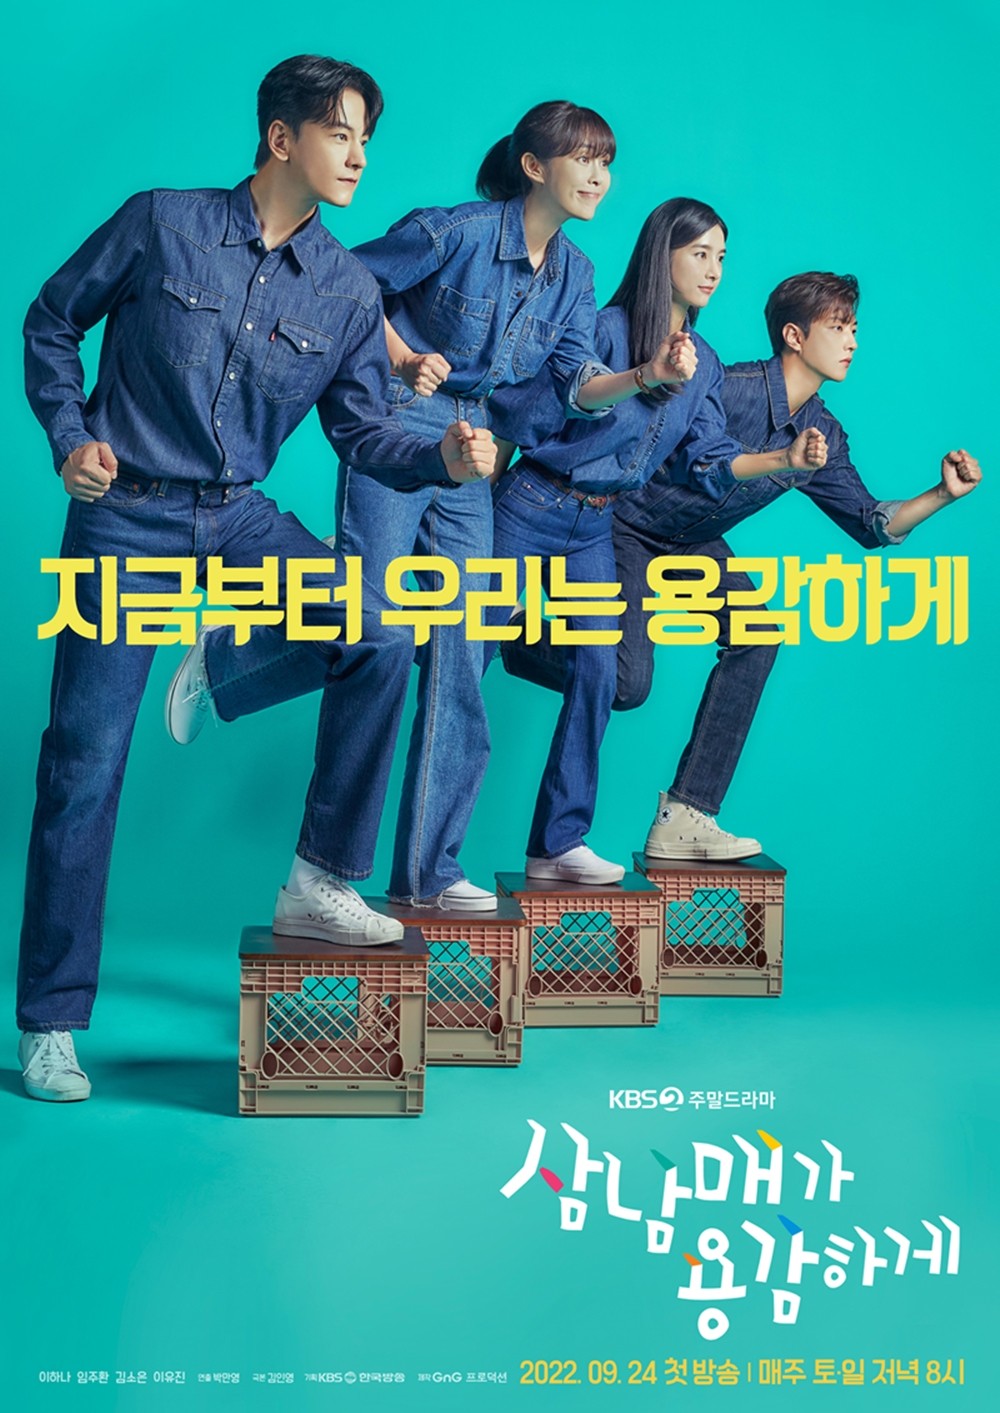 Phim Nước Hàn hoặc năm 2022: Ba u gan dạ (Three Bold Siblings)